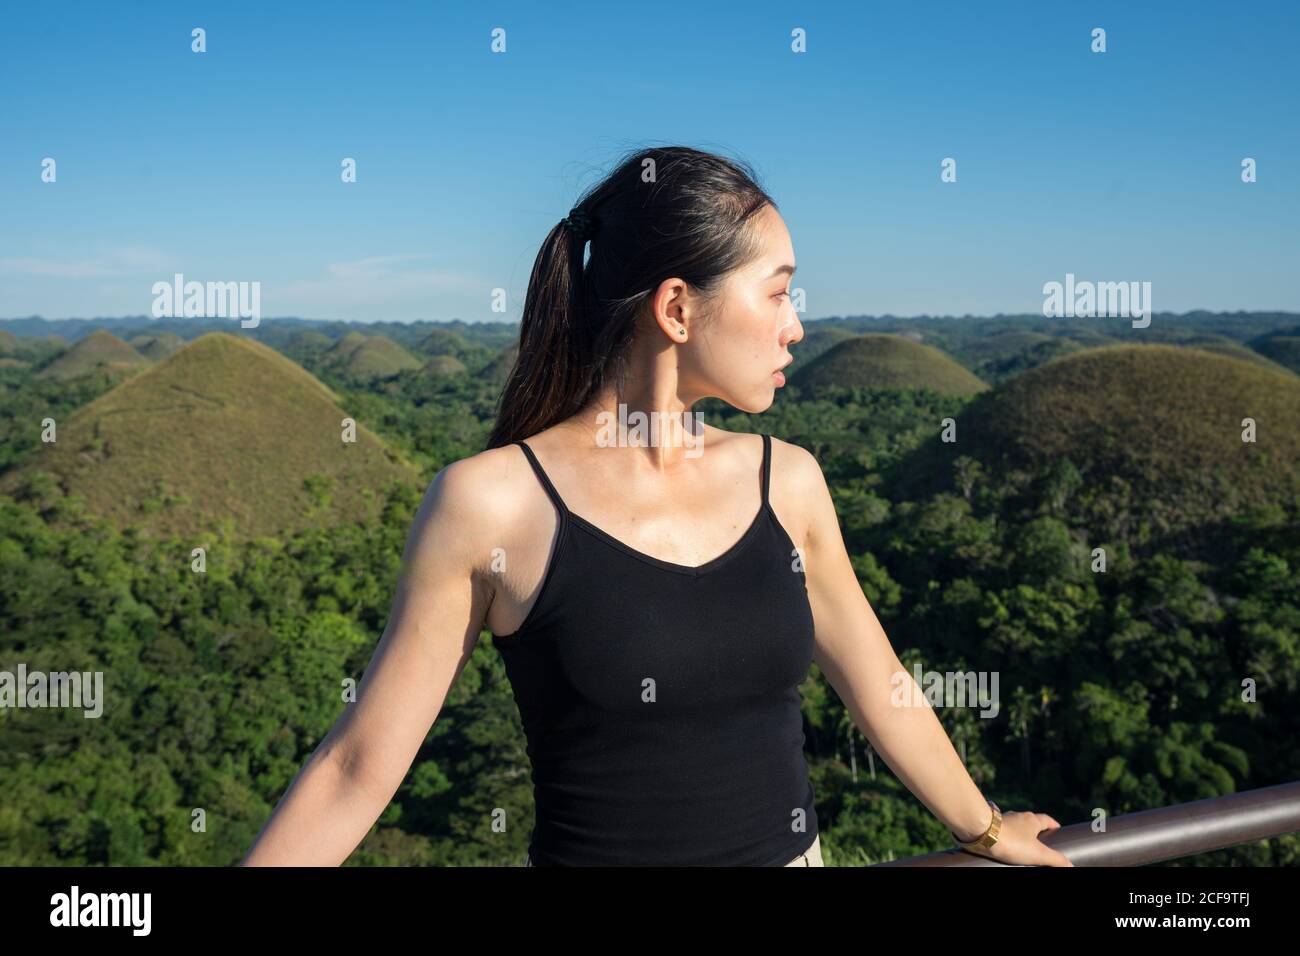 Jeune asiatique touriste en haut noir et pantalon gris vue sur l'extérieur en se tenant près de la clôture sur la terrasse d'observation avec des collines vertes et un ciel bleu en arrière-plan Banque D'Images